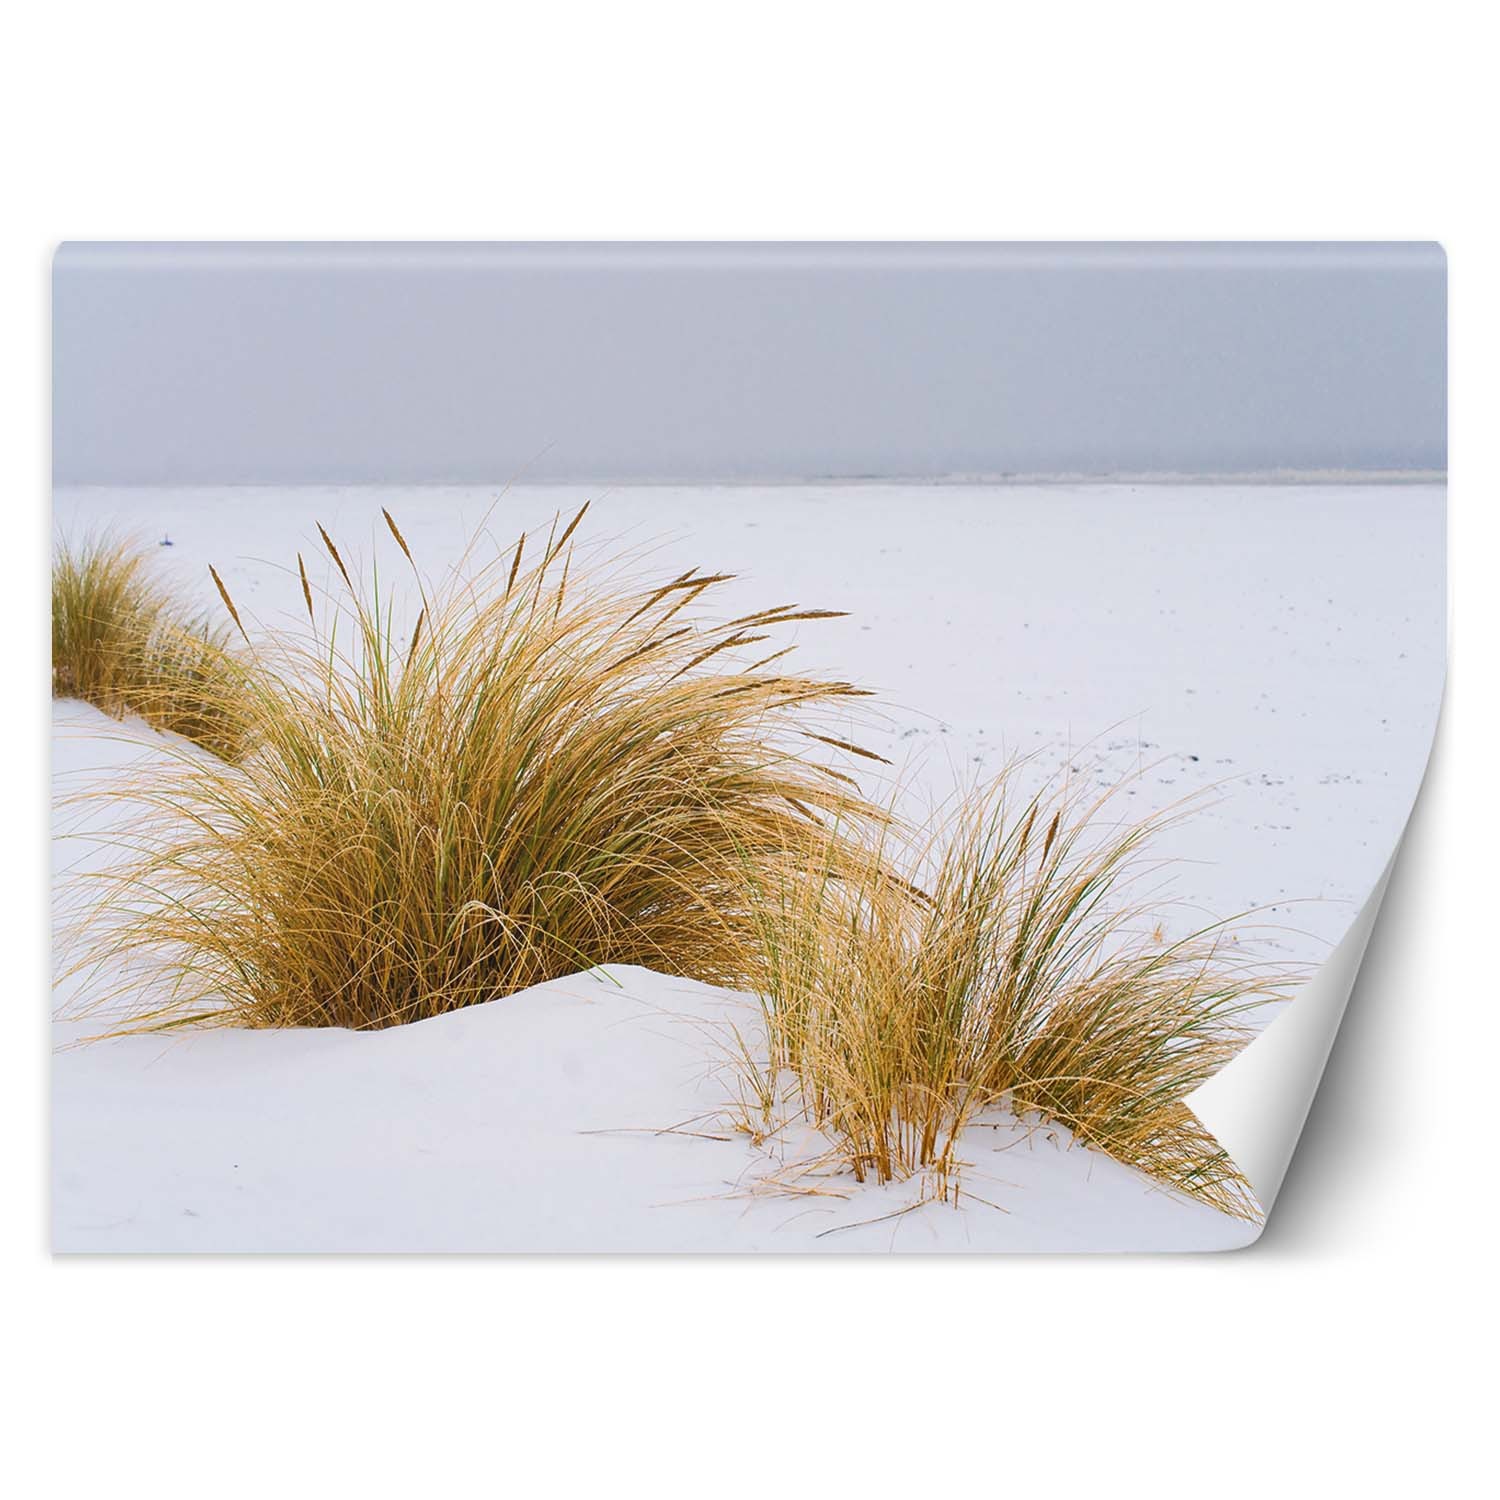 Trend24 – Behang – Duinen Op Gouden Zand – Behangpapier – Fotobehang Natuur – Behang Woonkamer – 250x175x2 cm – Incl. behanglijm